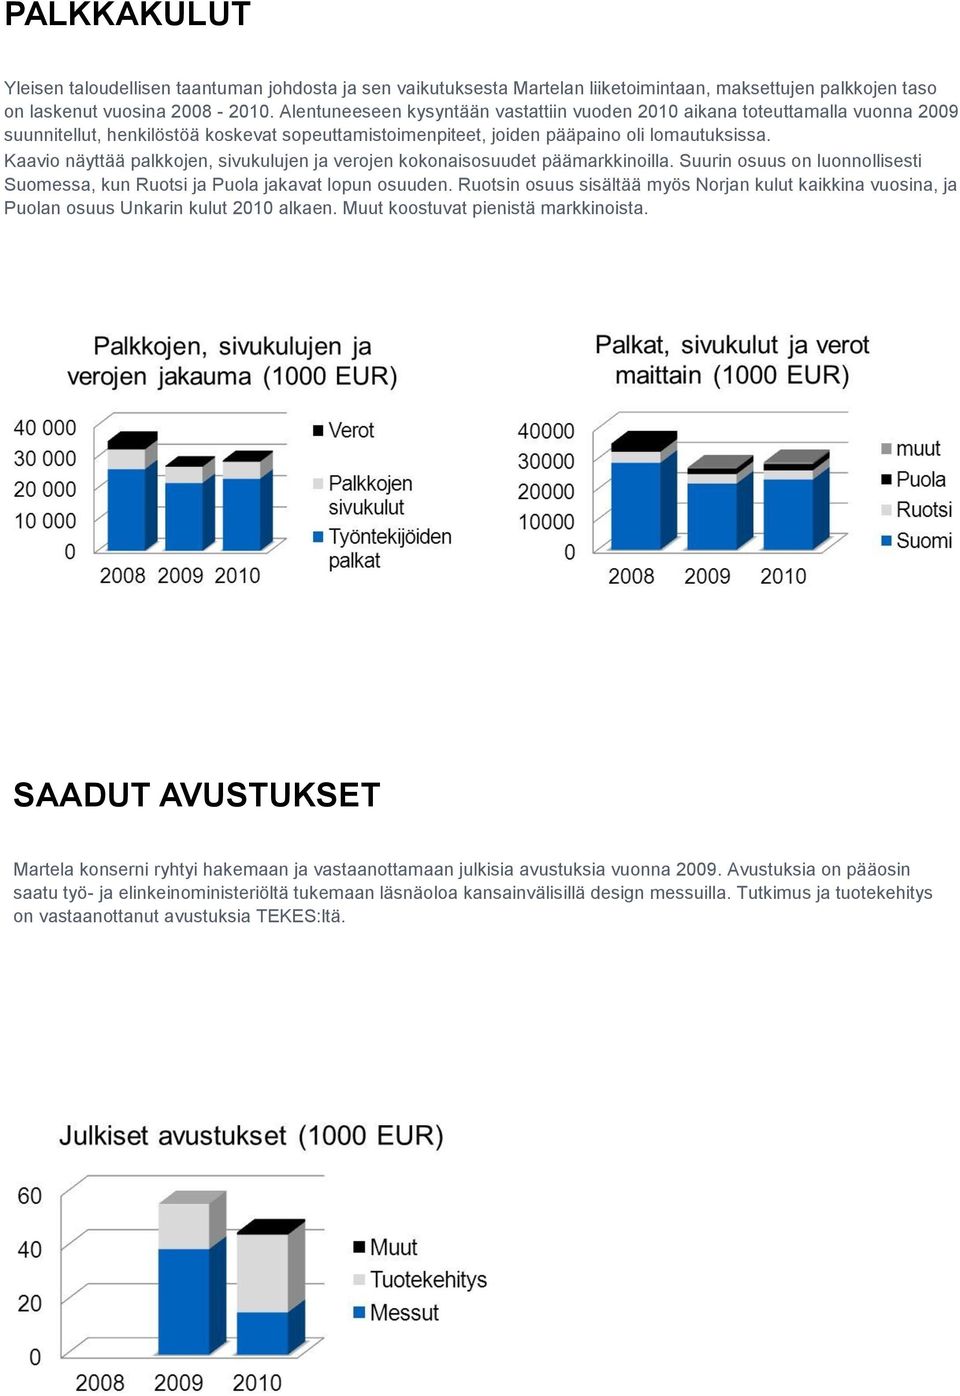 Kaavio näyttää palkkojen, sivukulujen ja verojen kokonaisosuudet päämarkkinoilla. Suurin osuus on luonnollisesti Suomessa, kun Ruotsi ja Puola jakavat lopun osuuden.